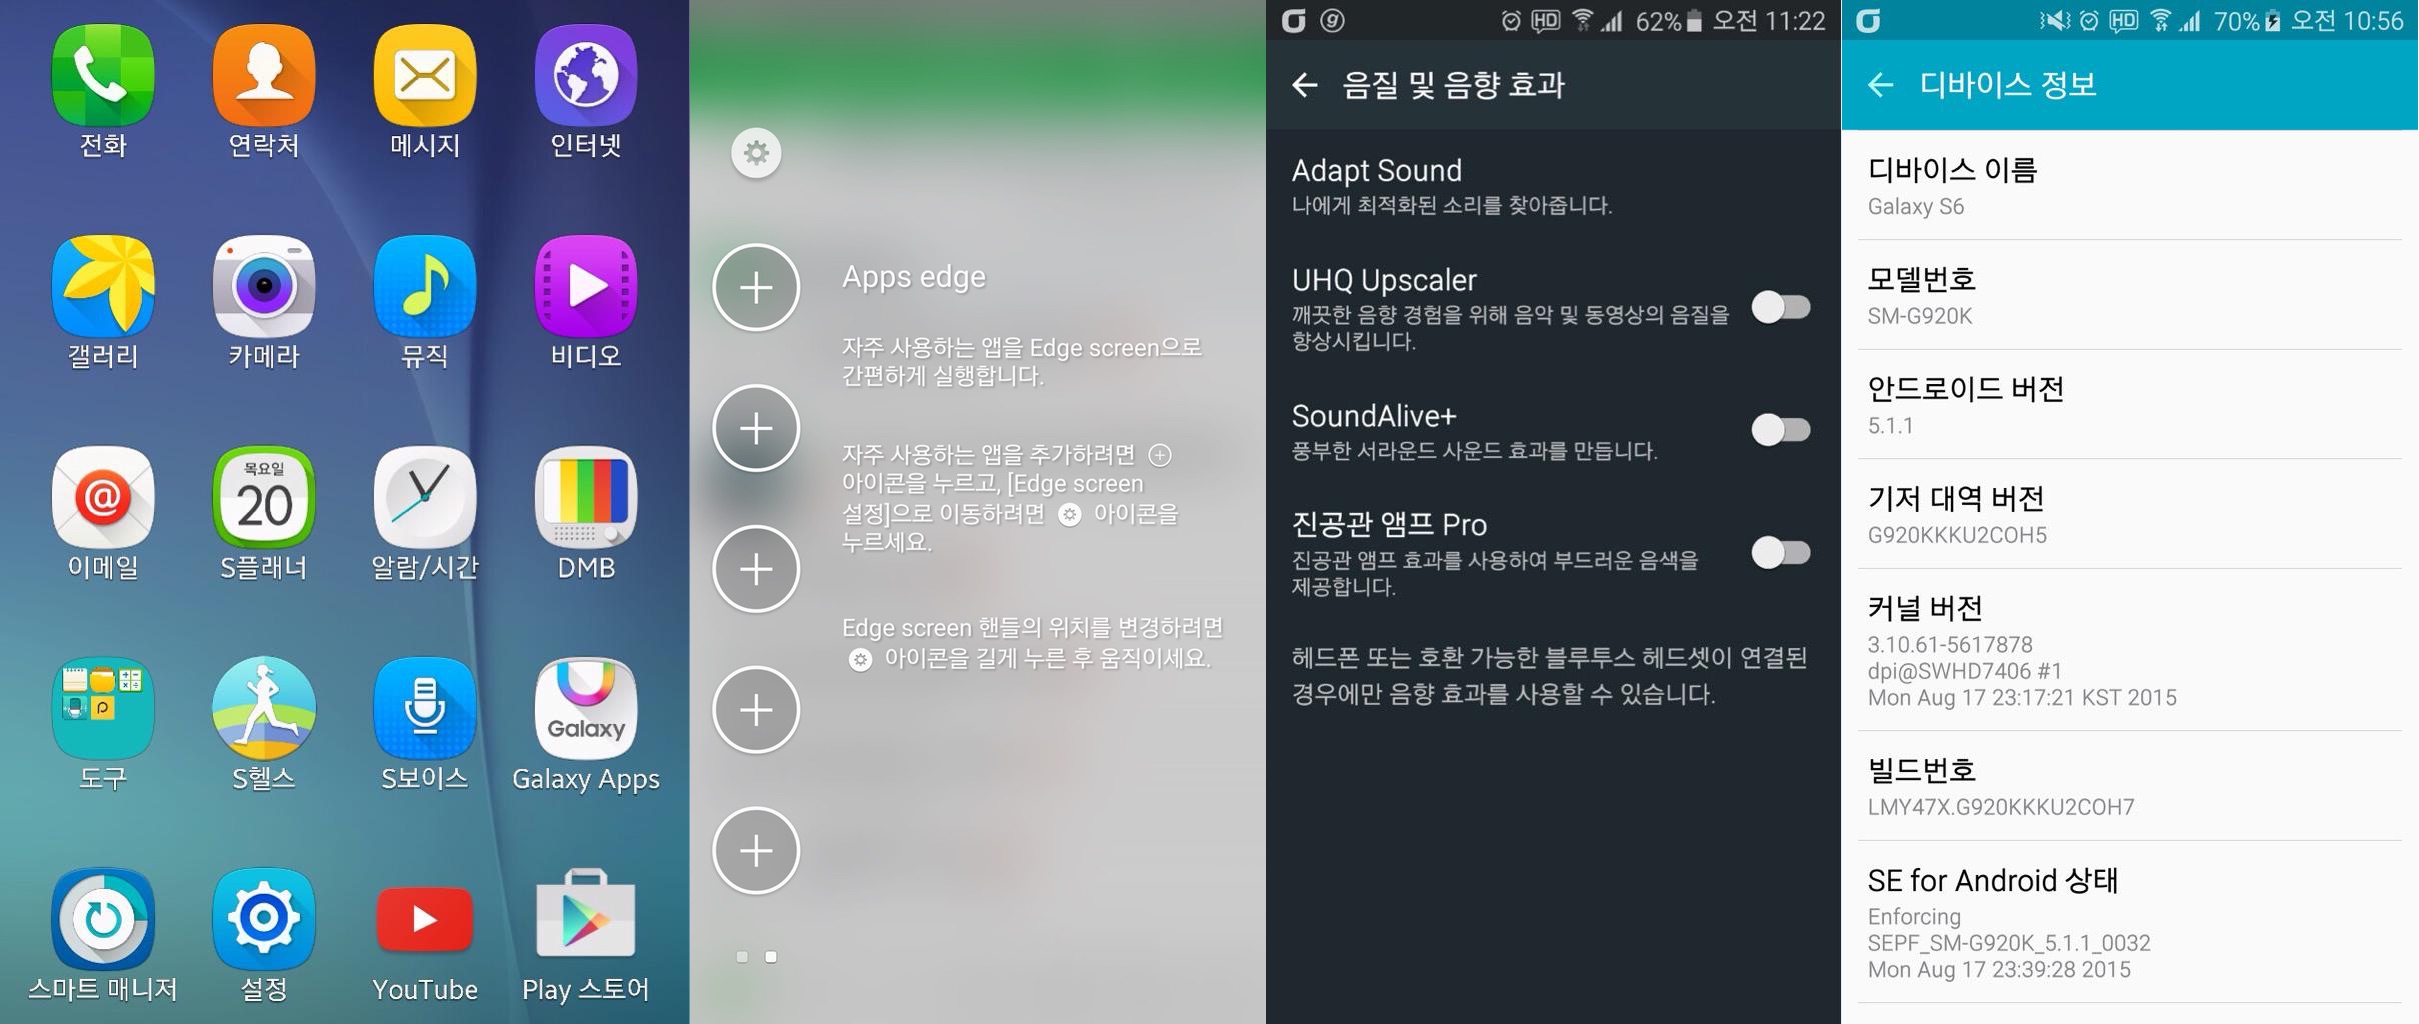 Samsung Galaxy S6 edge update